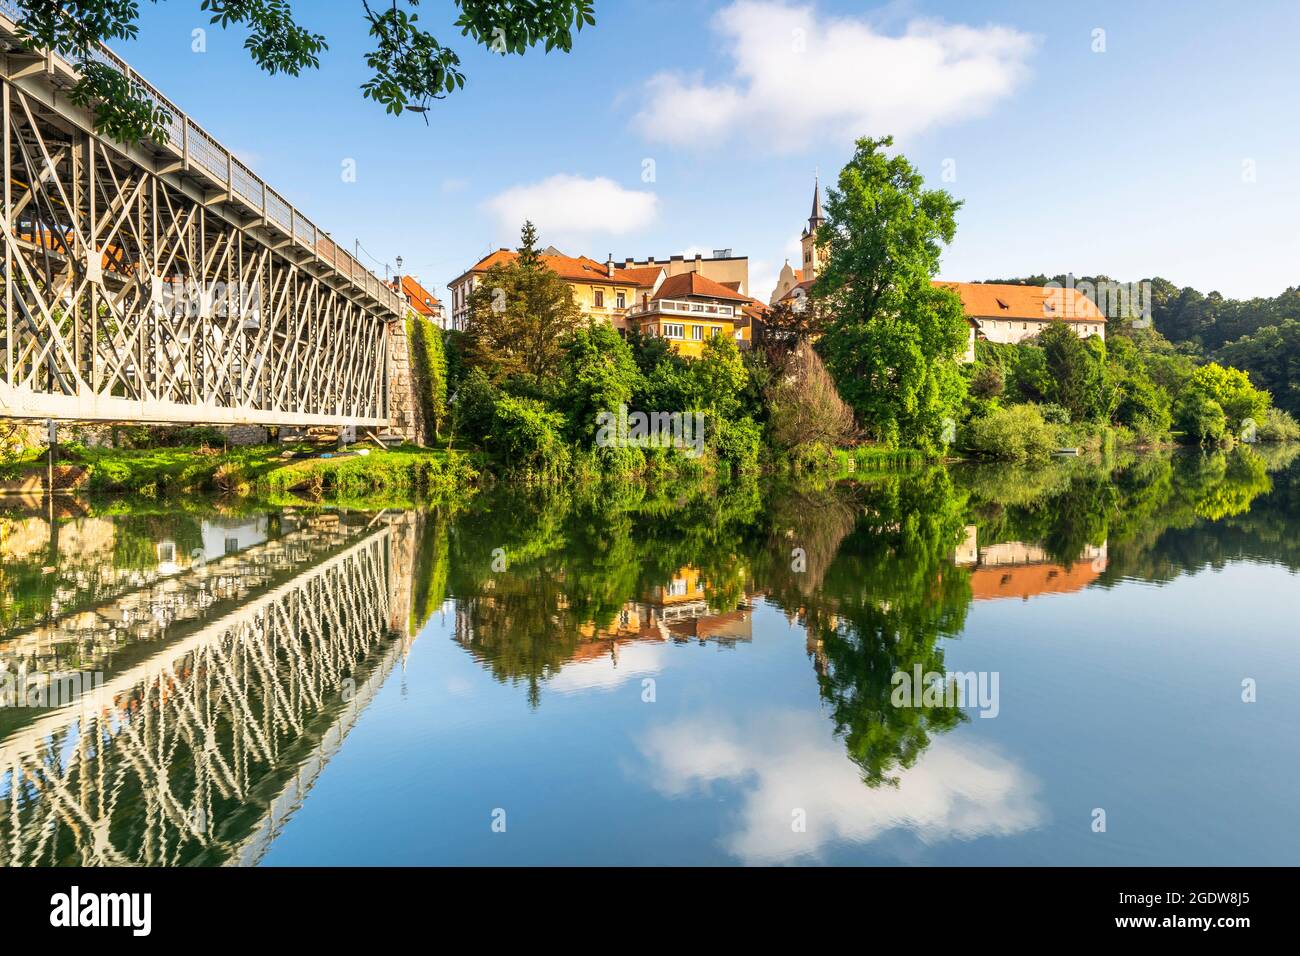 Kandija Bridge in Novo Mesto Slovenia at Krka River. Stock Photo